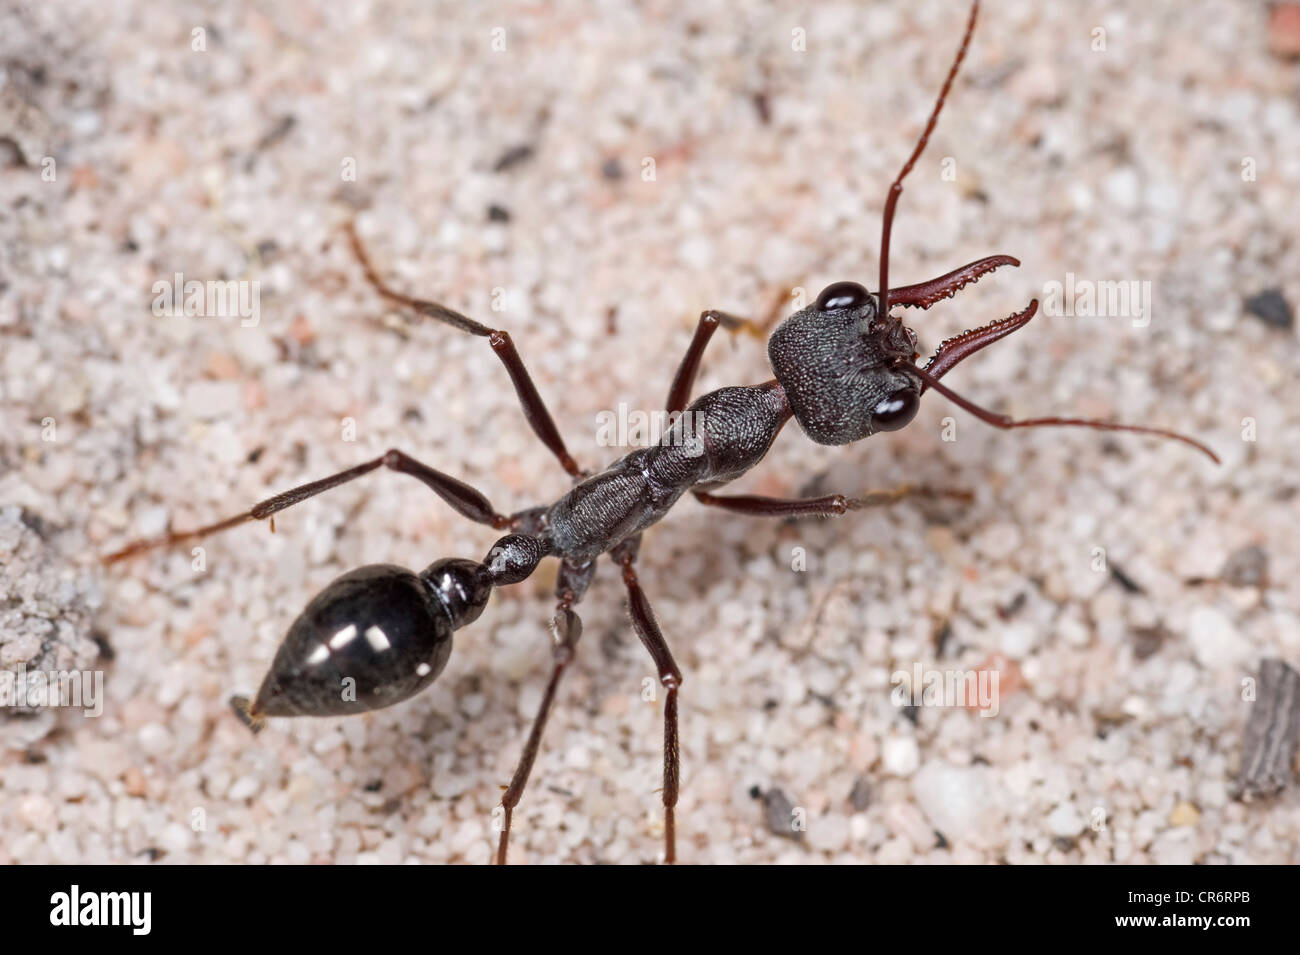 Australian Black Bull ant Stock Photo